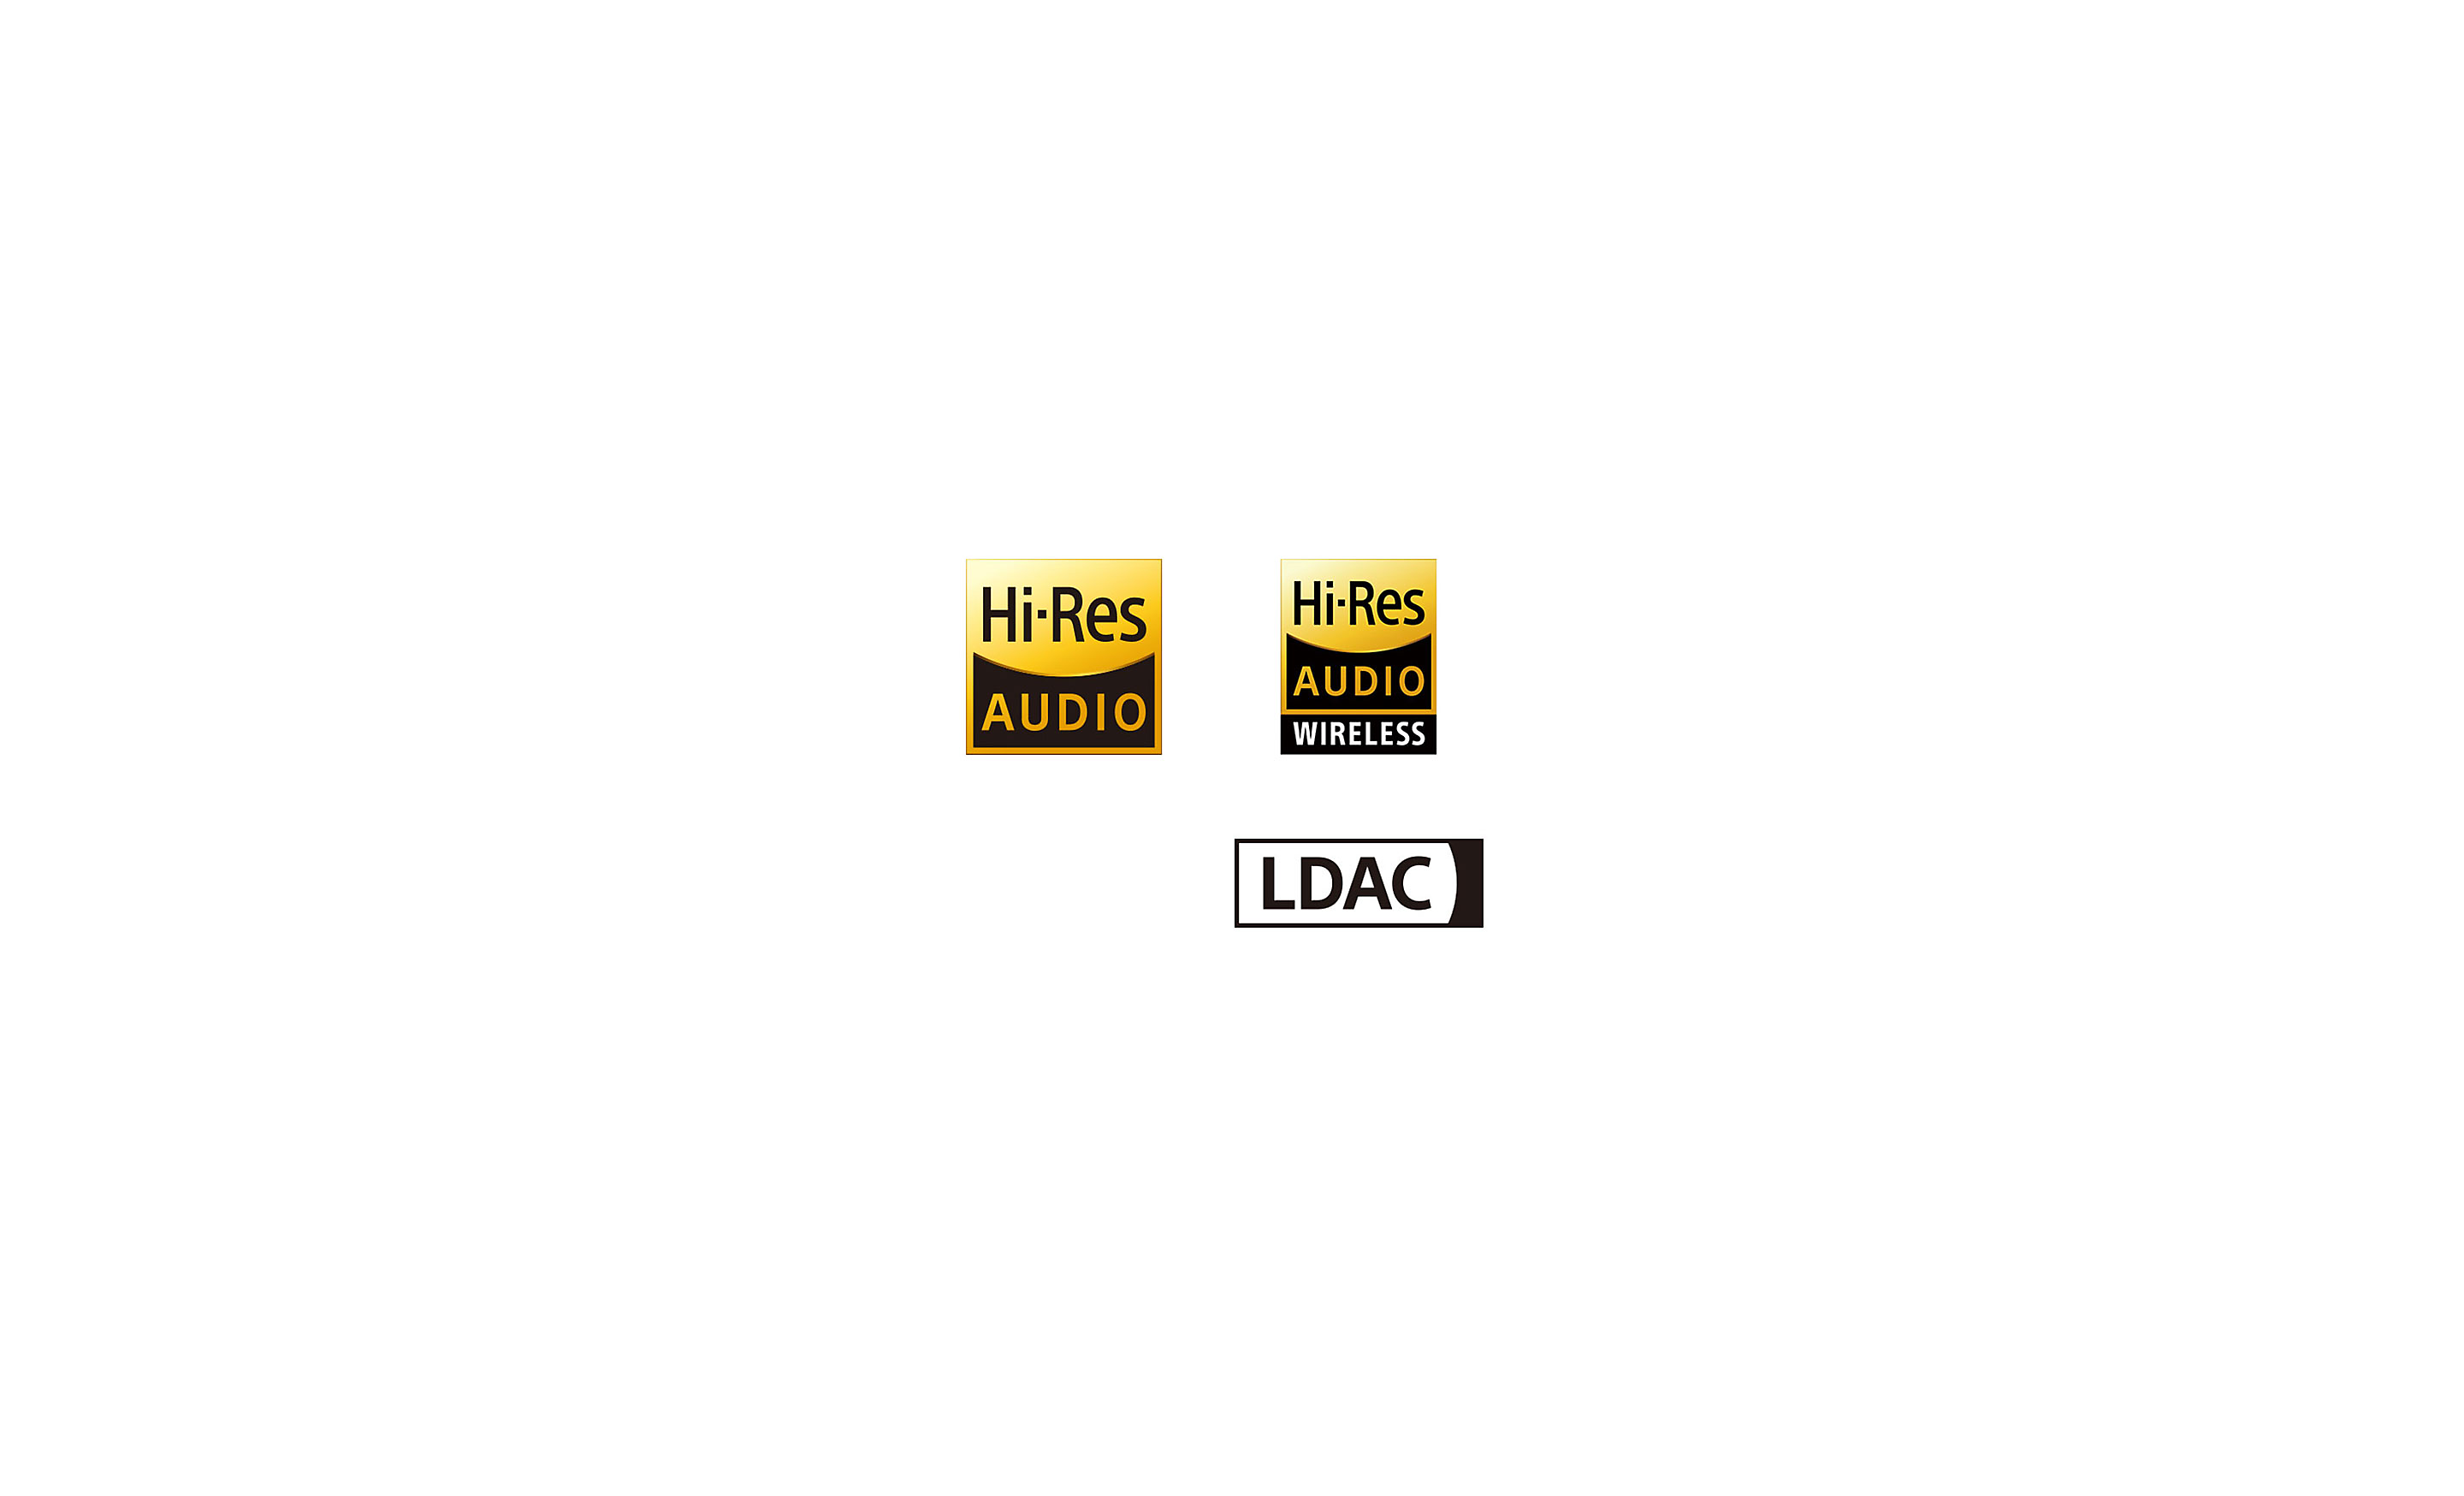 Logos de Hi-Res Audio, High-Res Audio Wireless y LDAC.